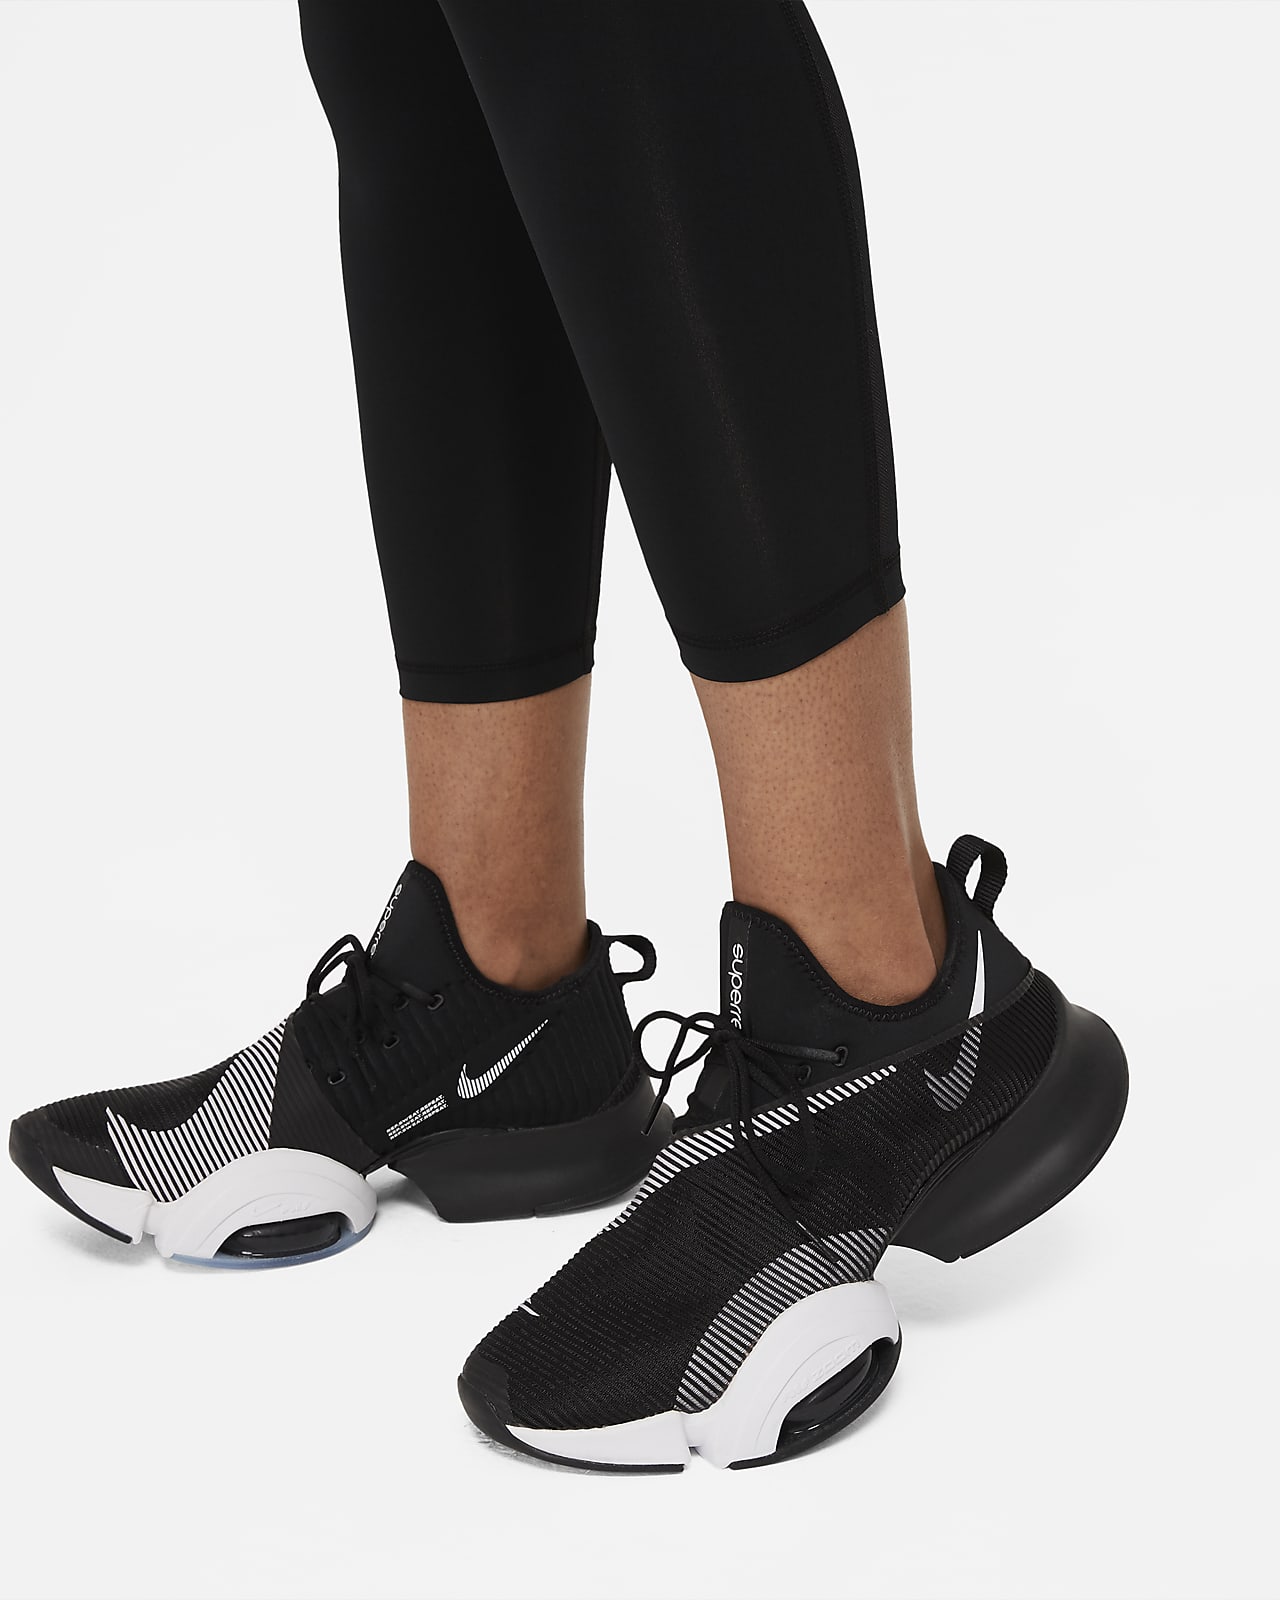 Nike Pro 365 Yüksek Belli 7/8 File Panelli Kadın Taytı